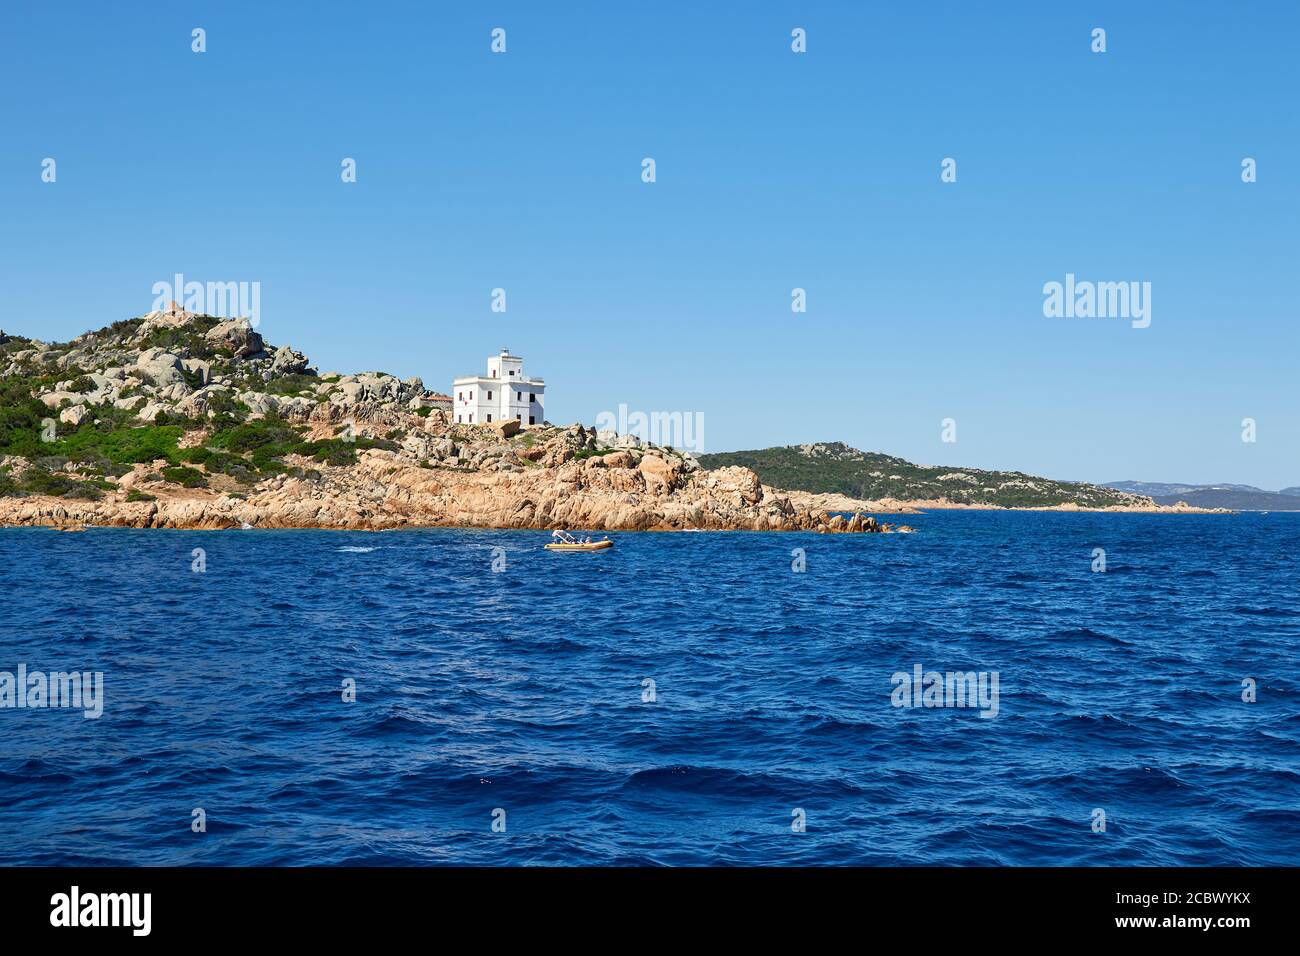 Audaci colori acquei della costa turrenica, vista dal viaggio in traghetto a la Maddalena, Sardegna Foto Stock